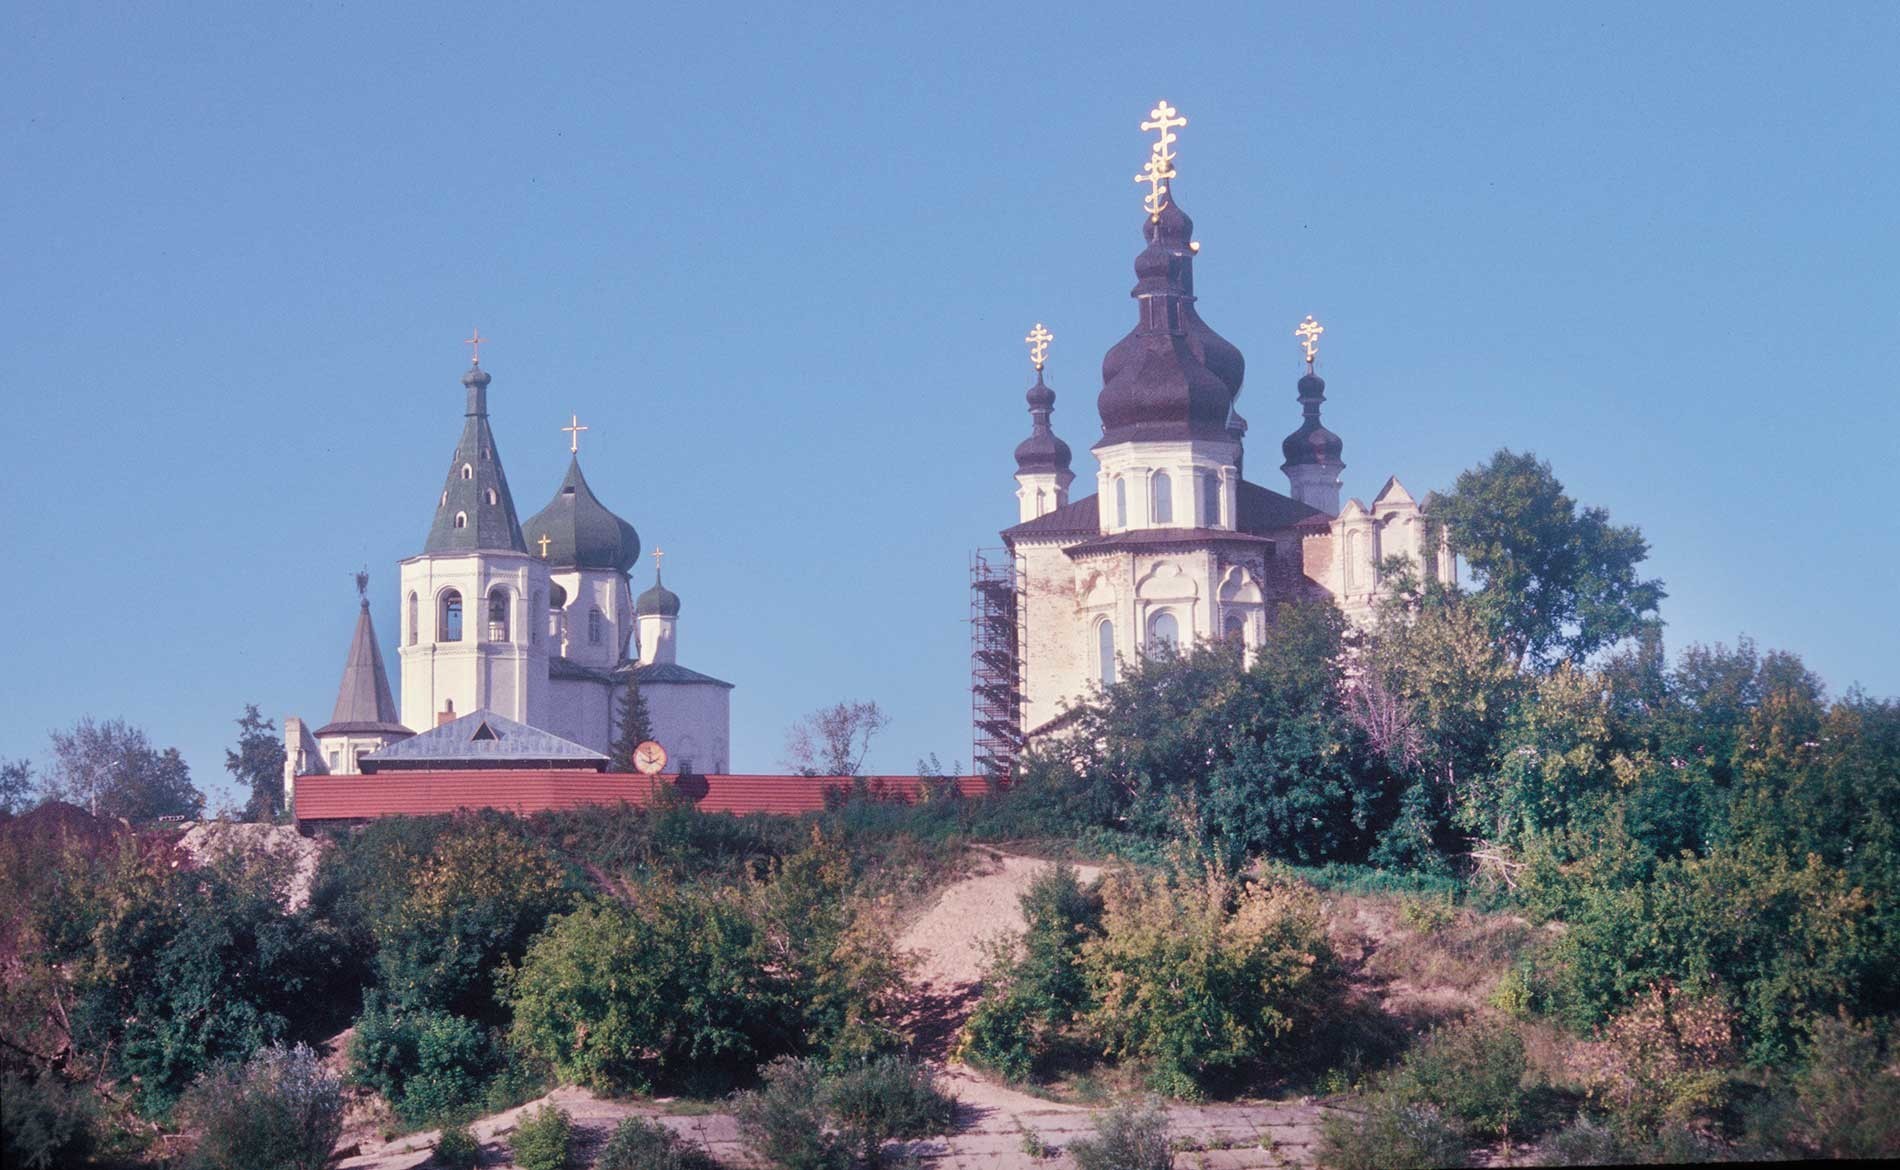 Tioumen. Monastère de la Trinité. Église des Saints Pierre et Paul (à gauche), cathédrale de la Trinité. Vue de la rivière Toura. 4 septembre 1999